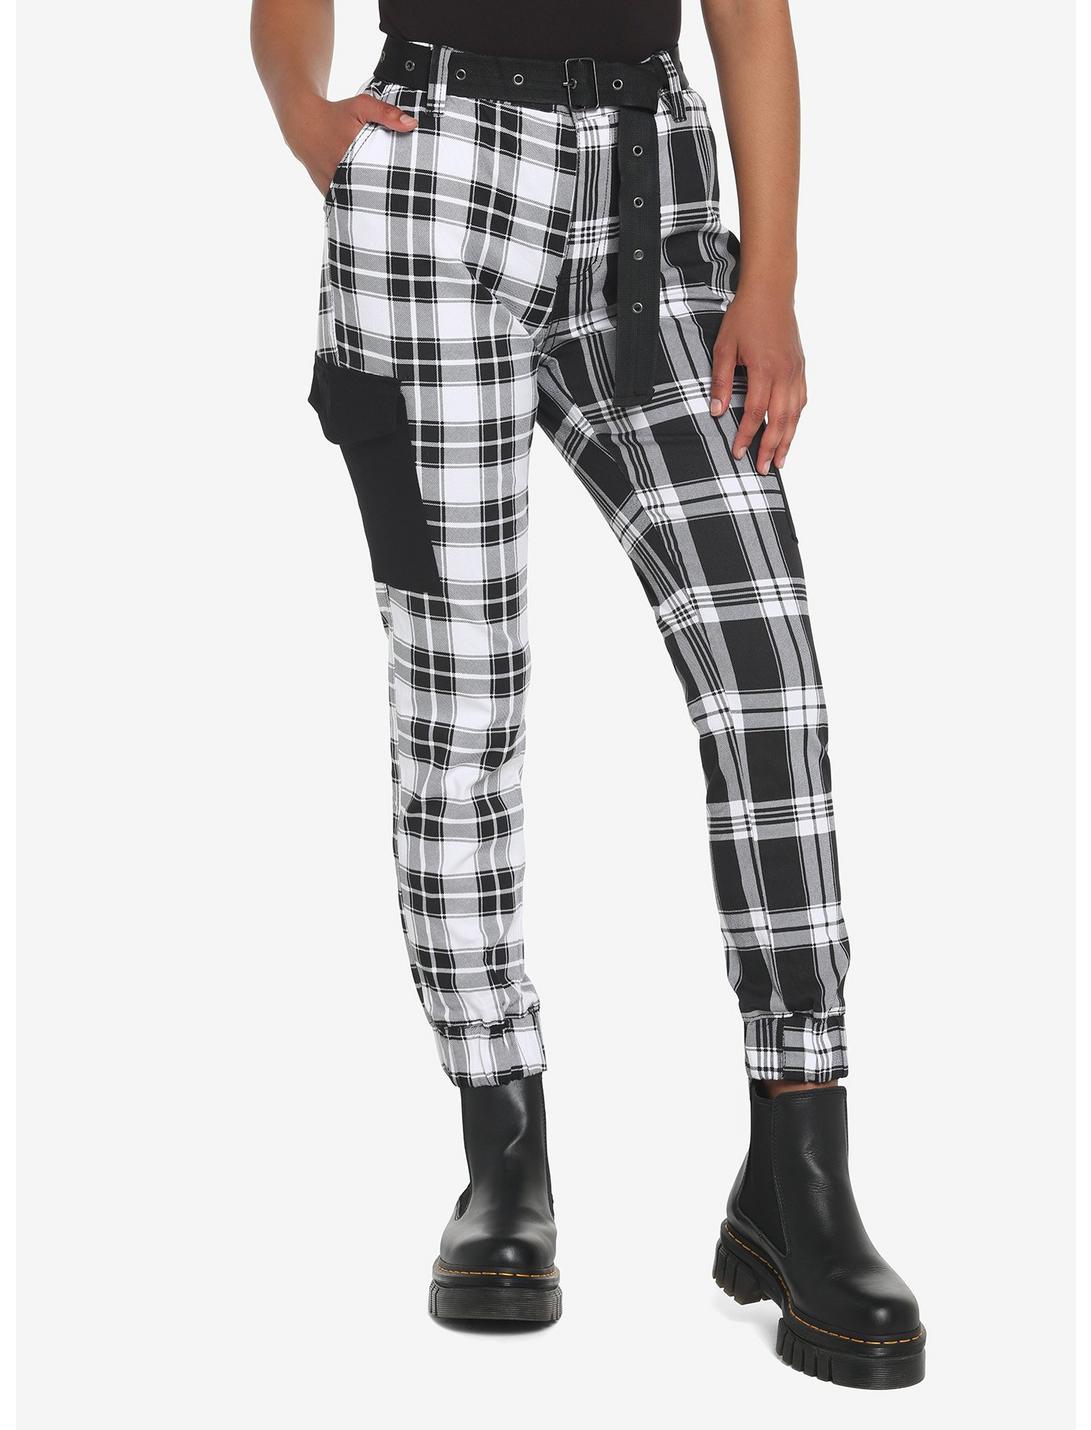 Black & White Plaid Split Jogger Pants, BLACK  WHITE, hi-res